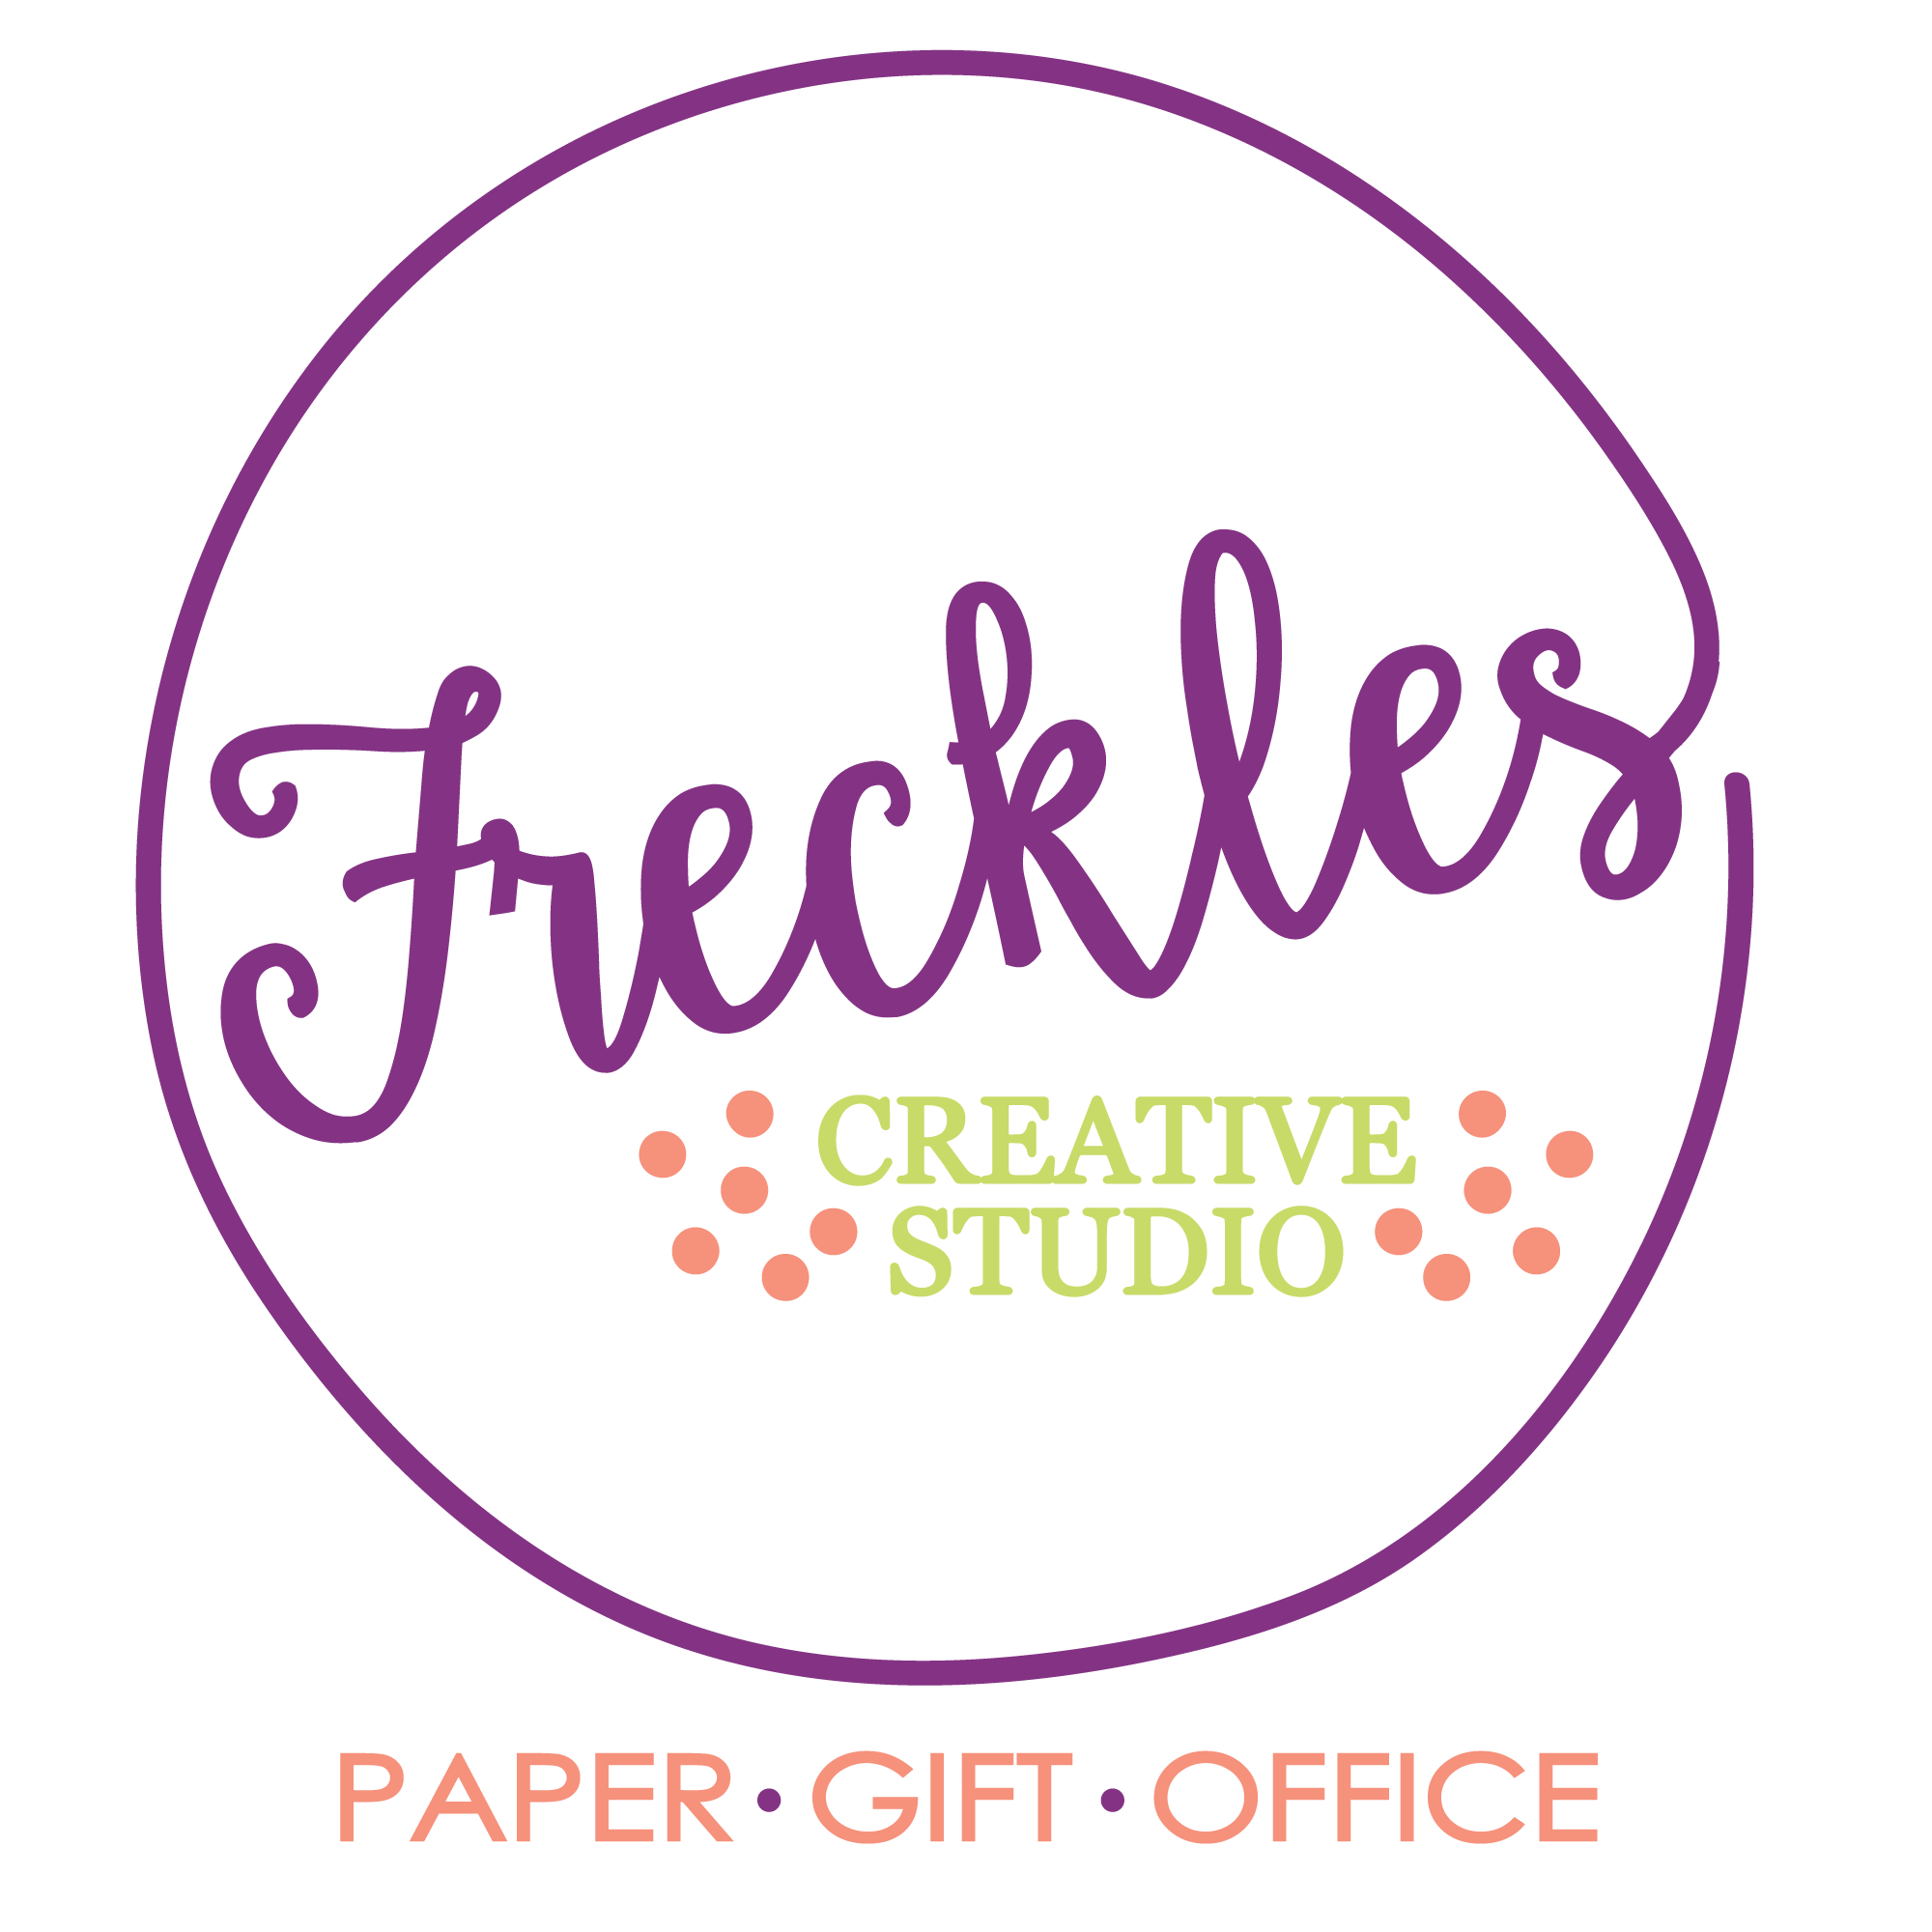 Round Purple Logo - Freckles Creative Studio Logo Design - round, purple logo ...